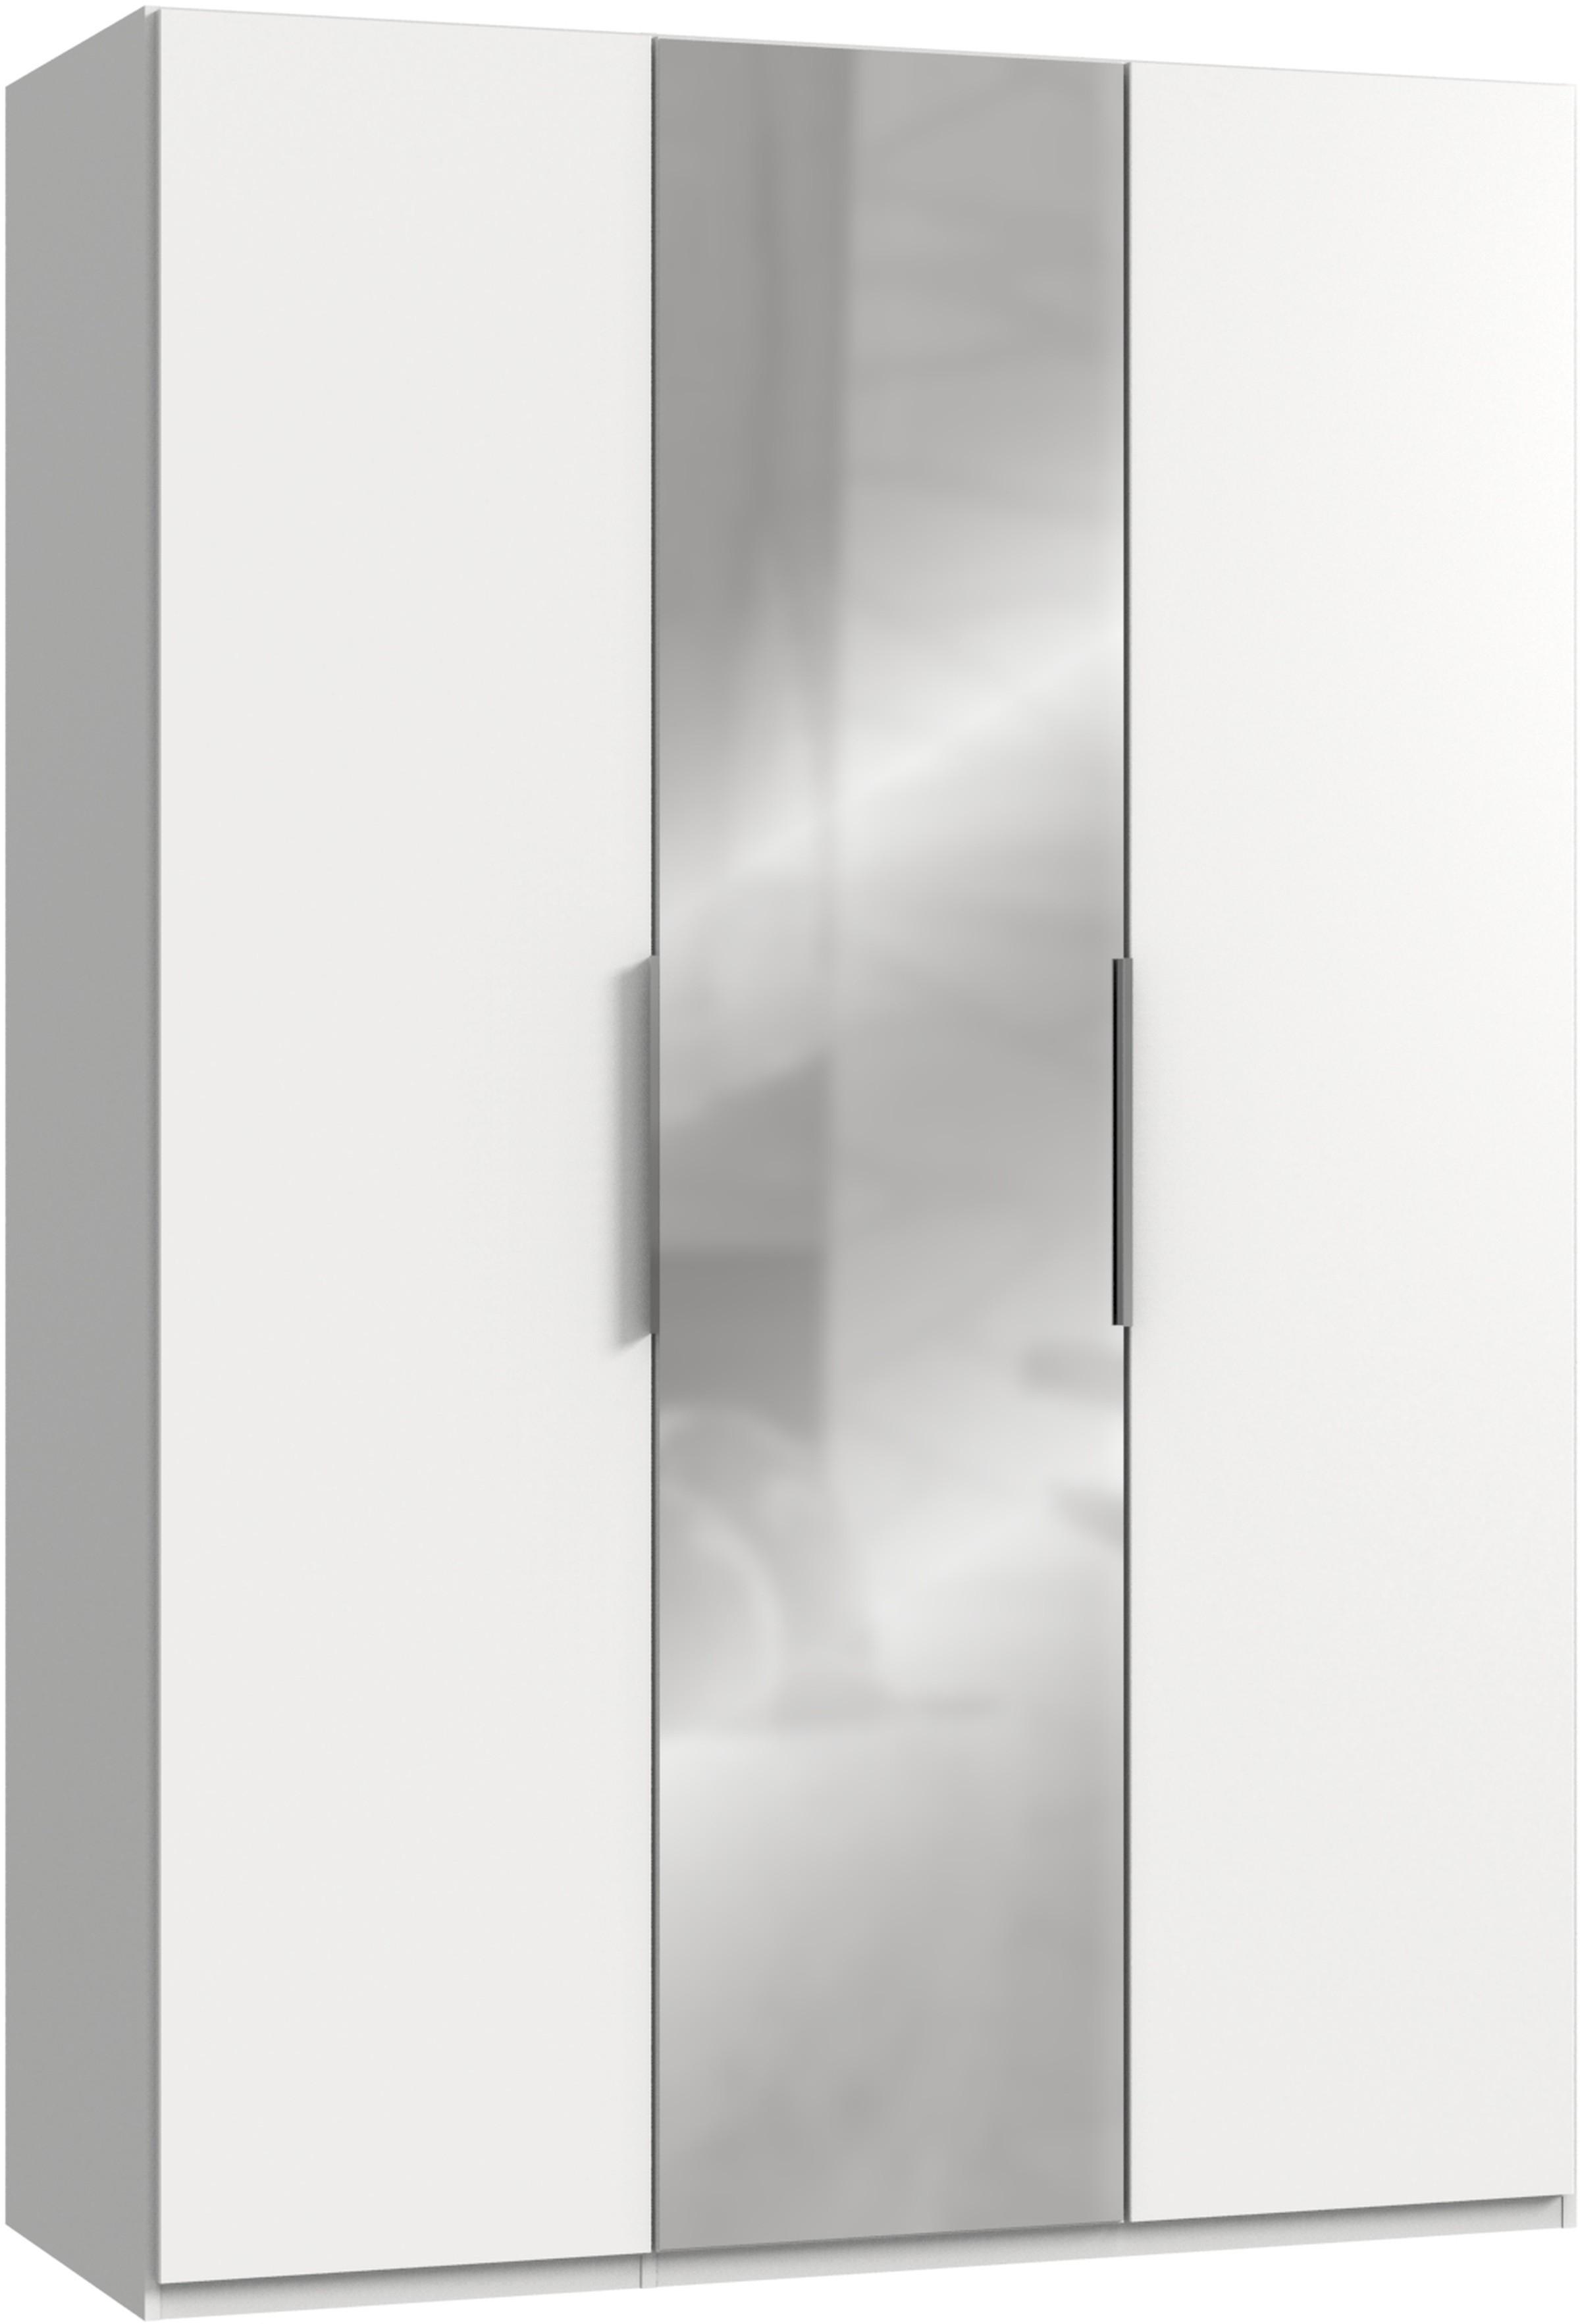 Drehtürenschrank Mit Spiegel 150 cm Level, Grau/Weiß - Weiß, MODERN, Holzwerkstoff (150/216/58cm) - MID.YOU